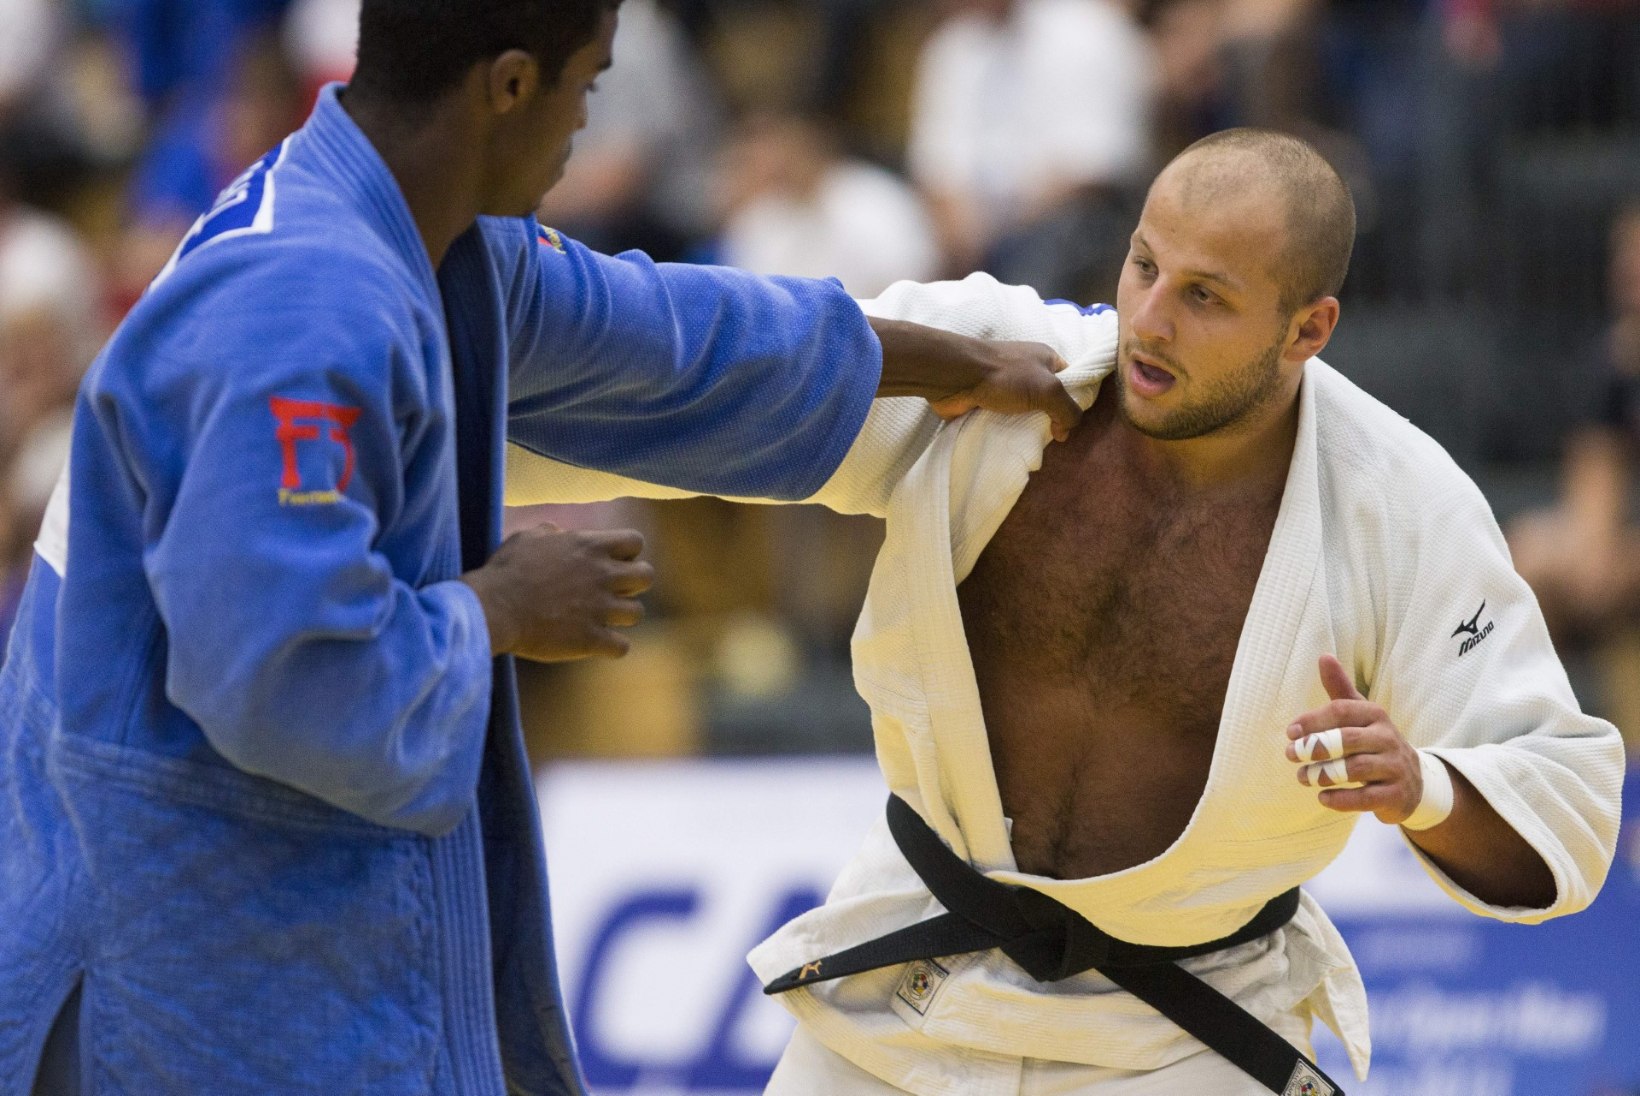 Eesti judole paistab lootusekiir – kaks meest olümpiakonkurentsis!